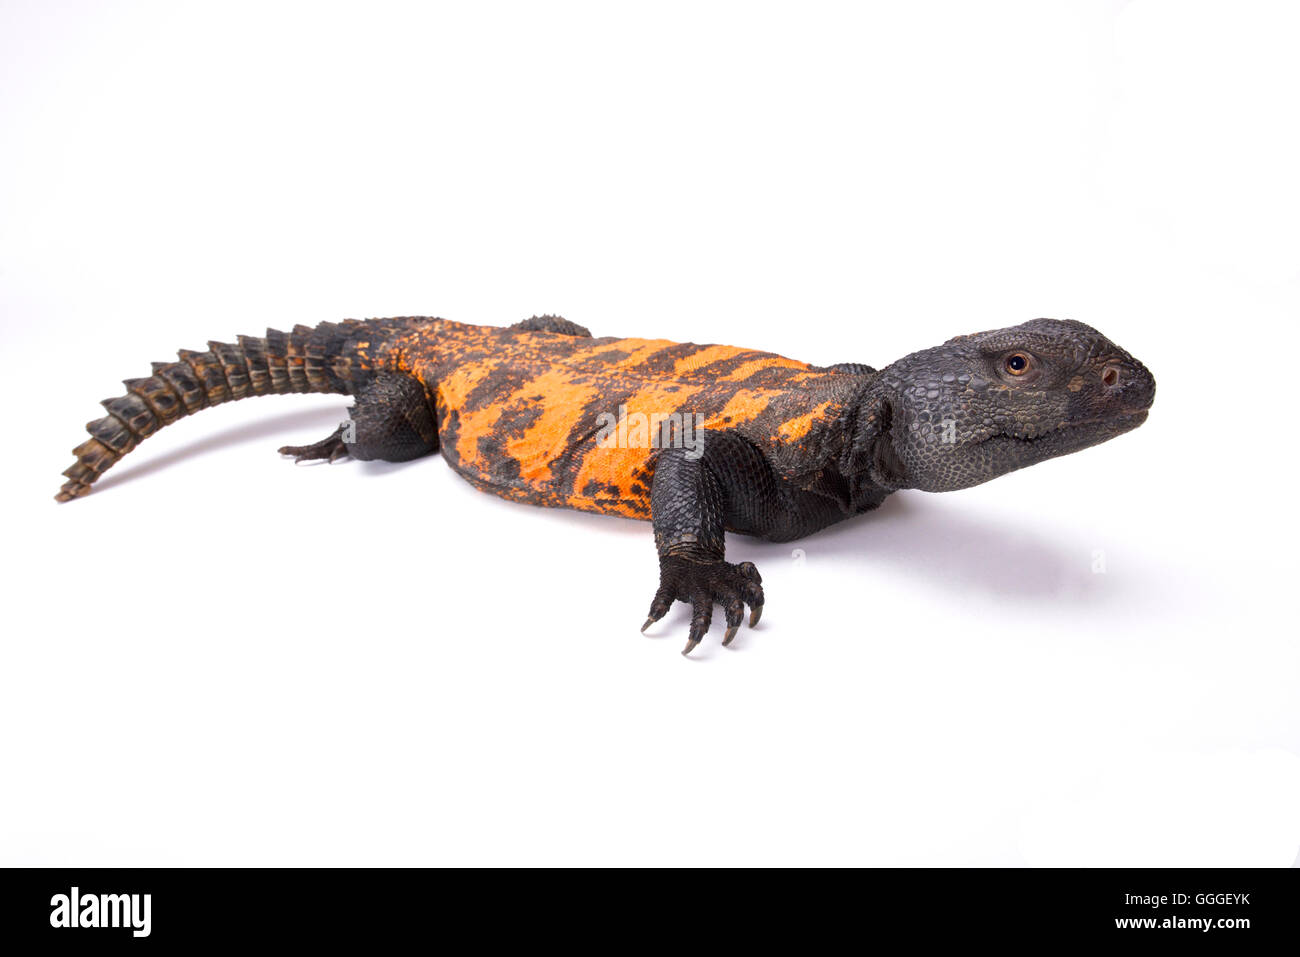 South Saharan spiny-tailed lizard (Uromastyx flavifasciata) Stock Photo